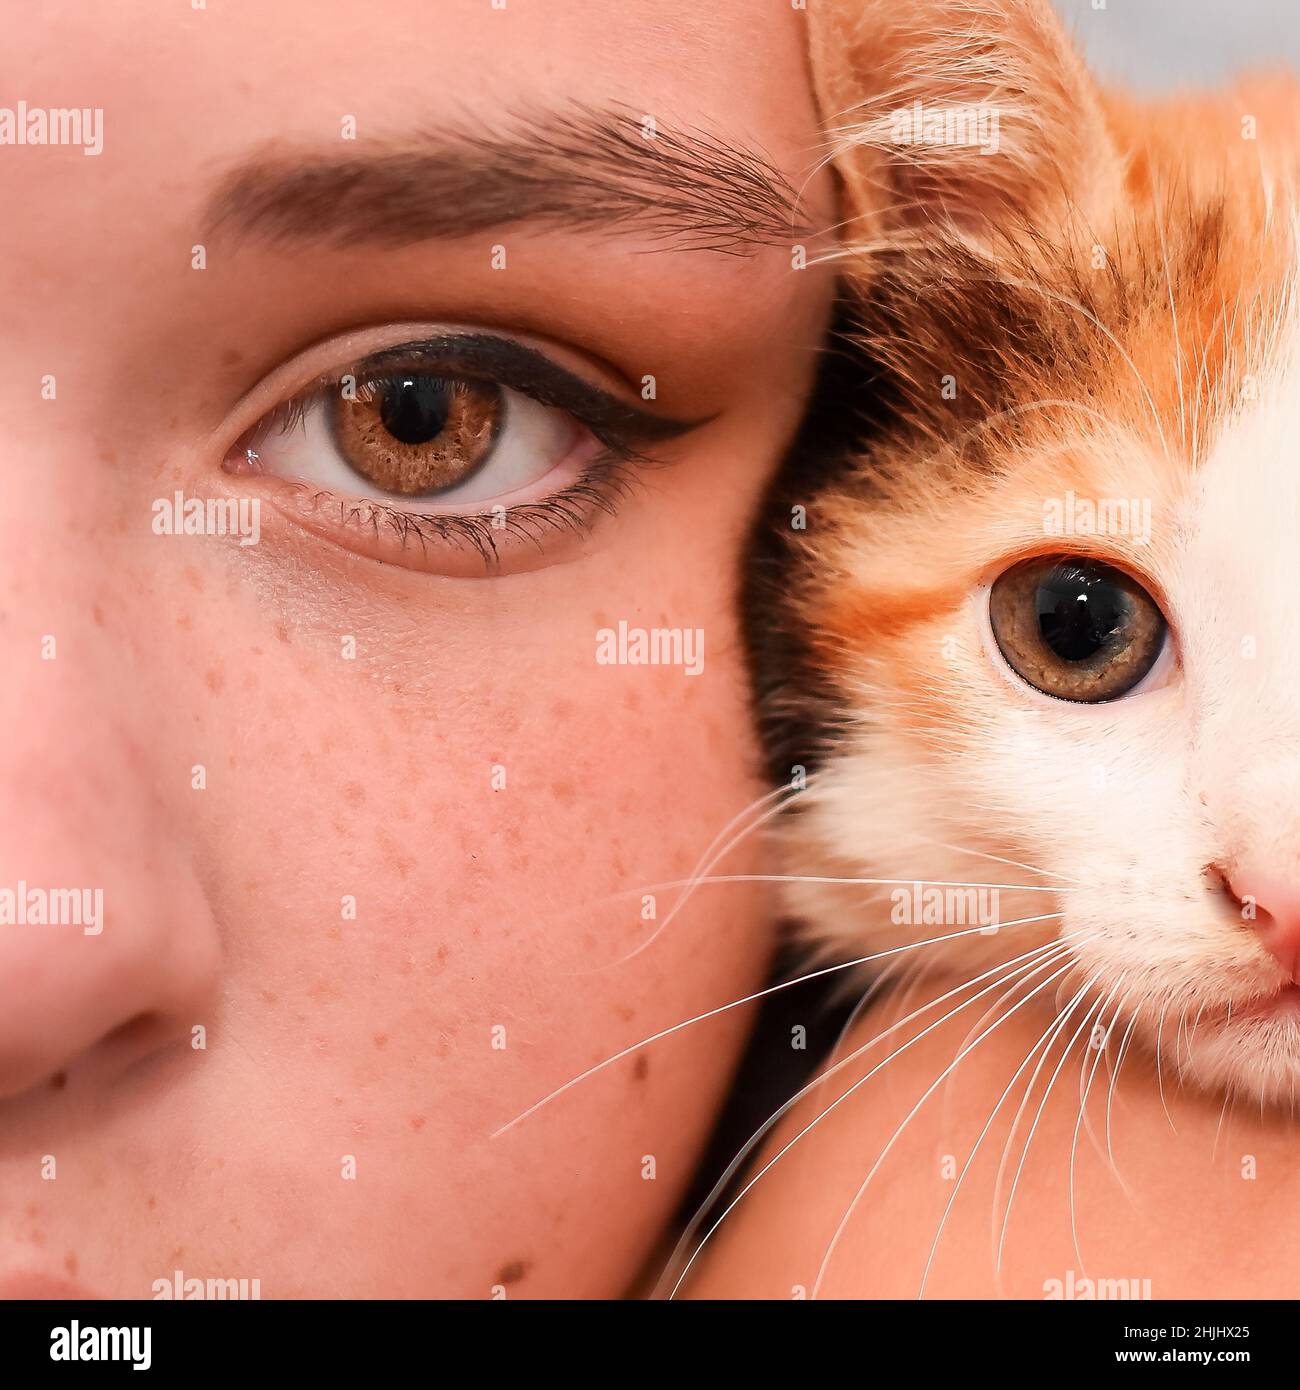 giovane donna e un gattino rosso con occhi marroni. primo piano. l'aspetto di una ragazza con greckles. Foto Stock